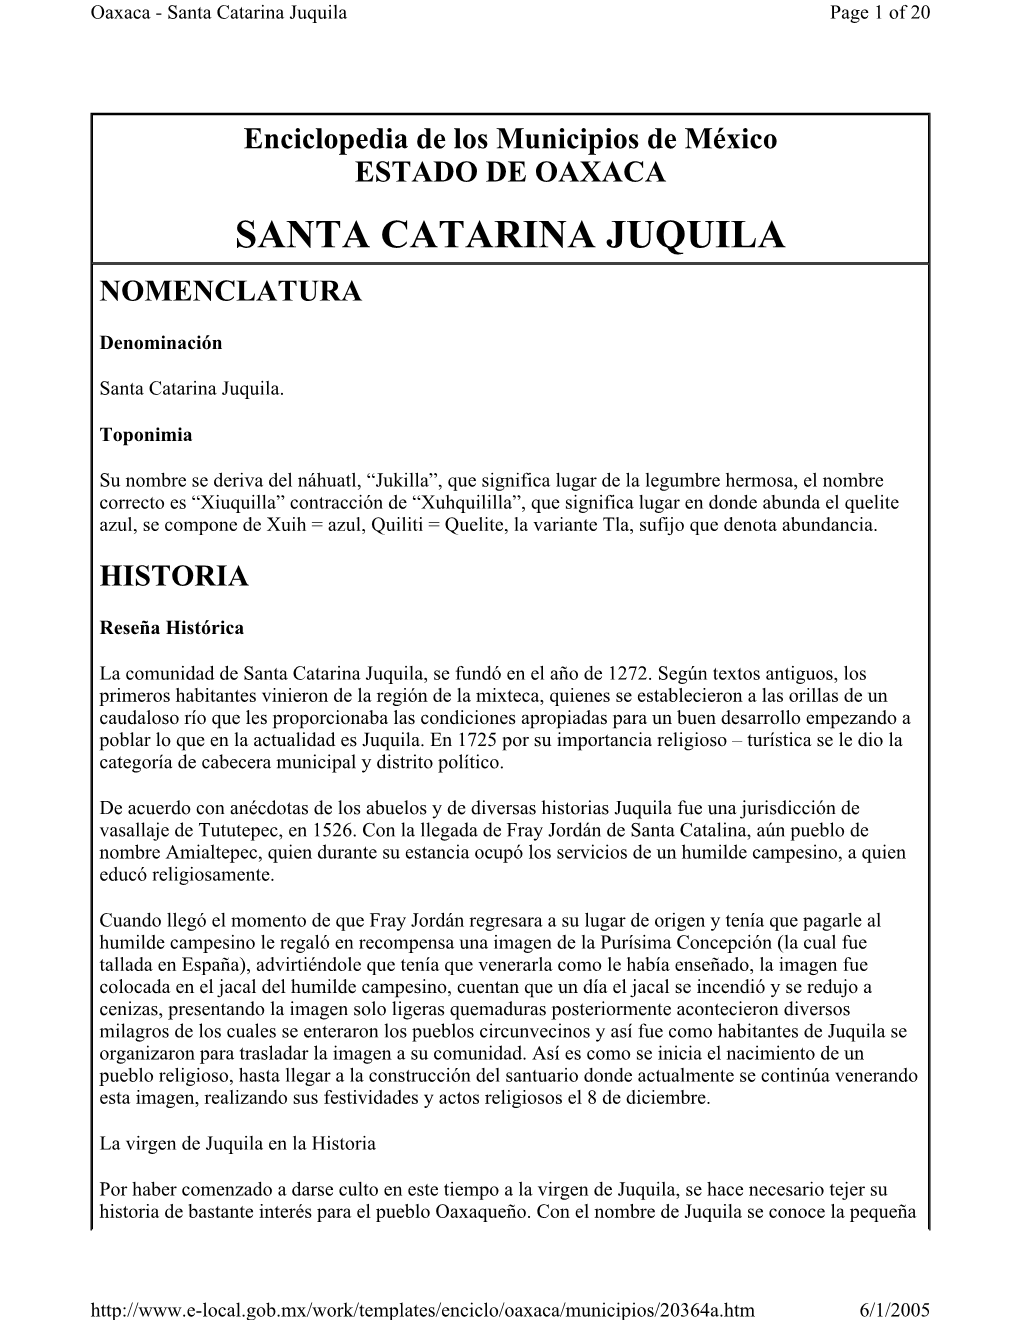 Santa Catarina Juquila Page 1 of 20